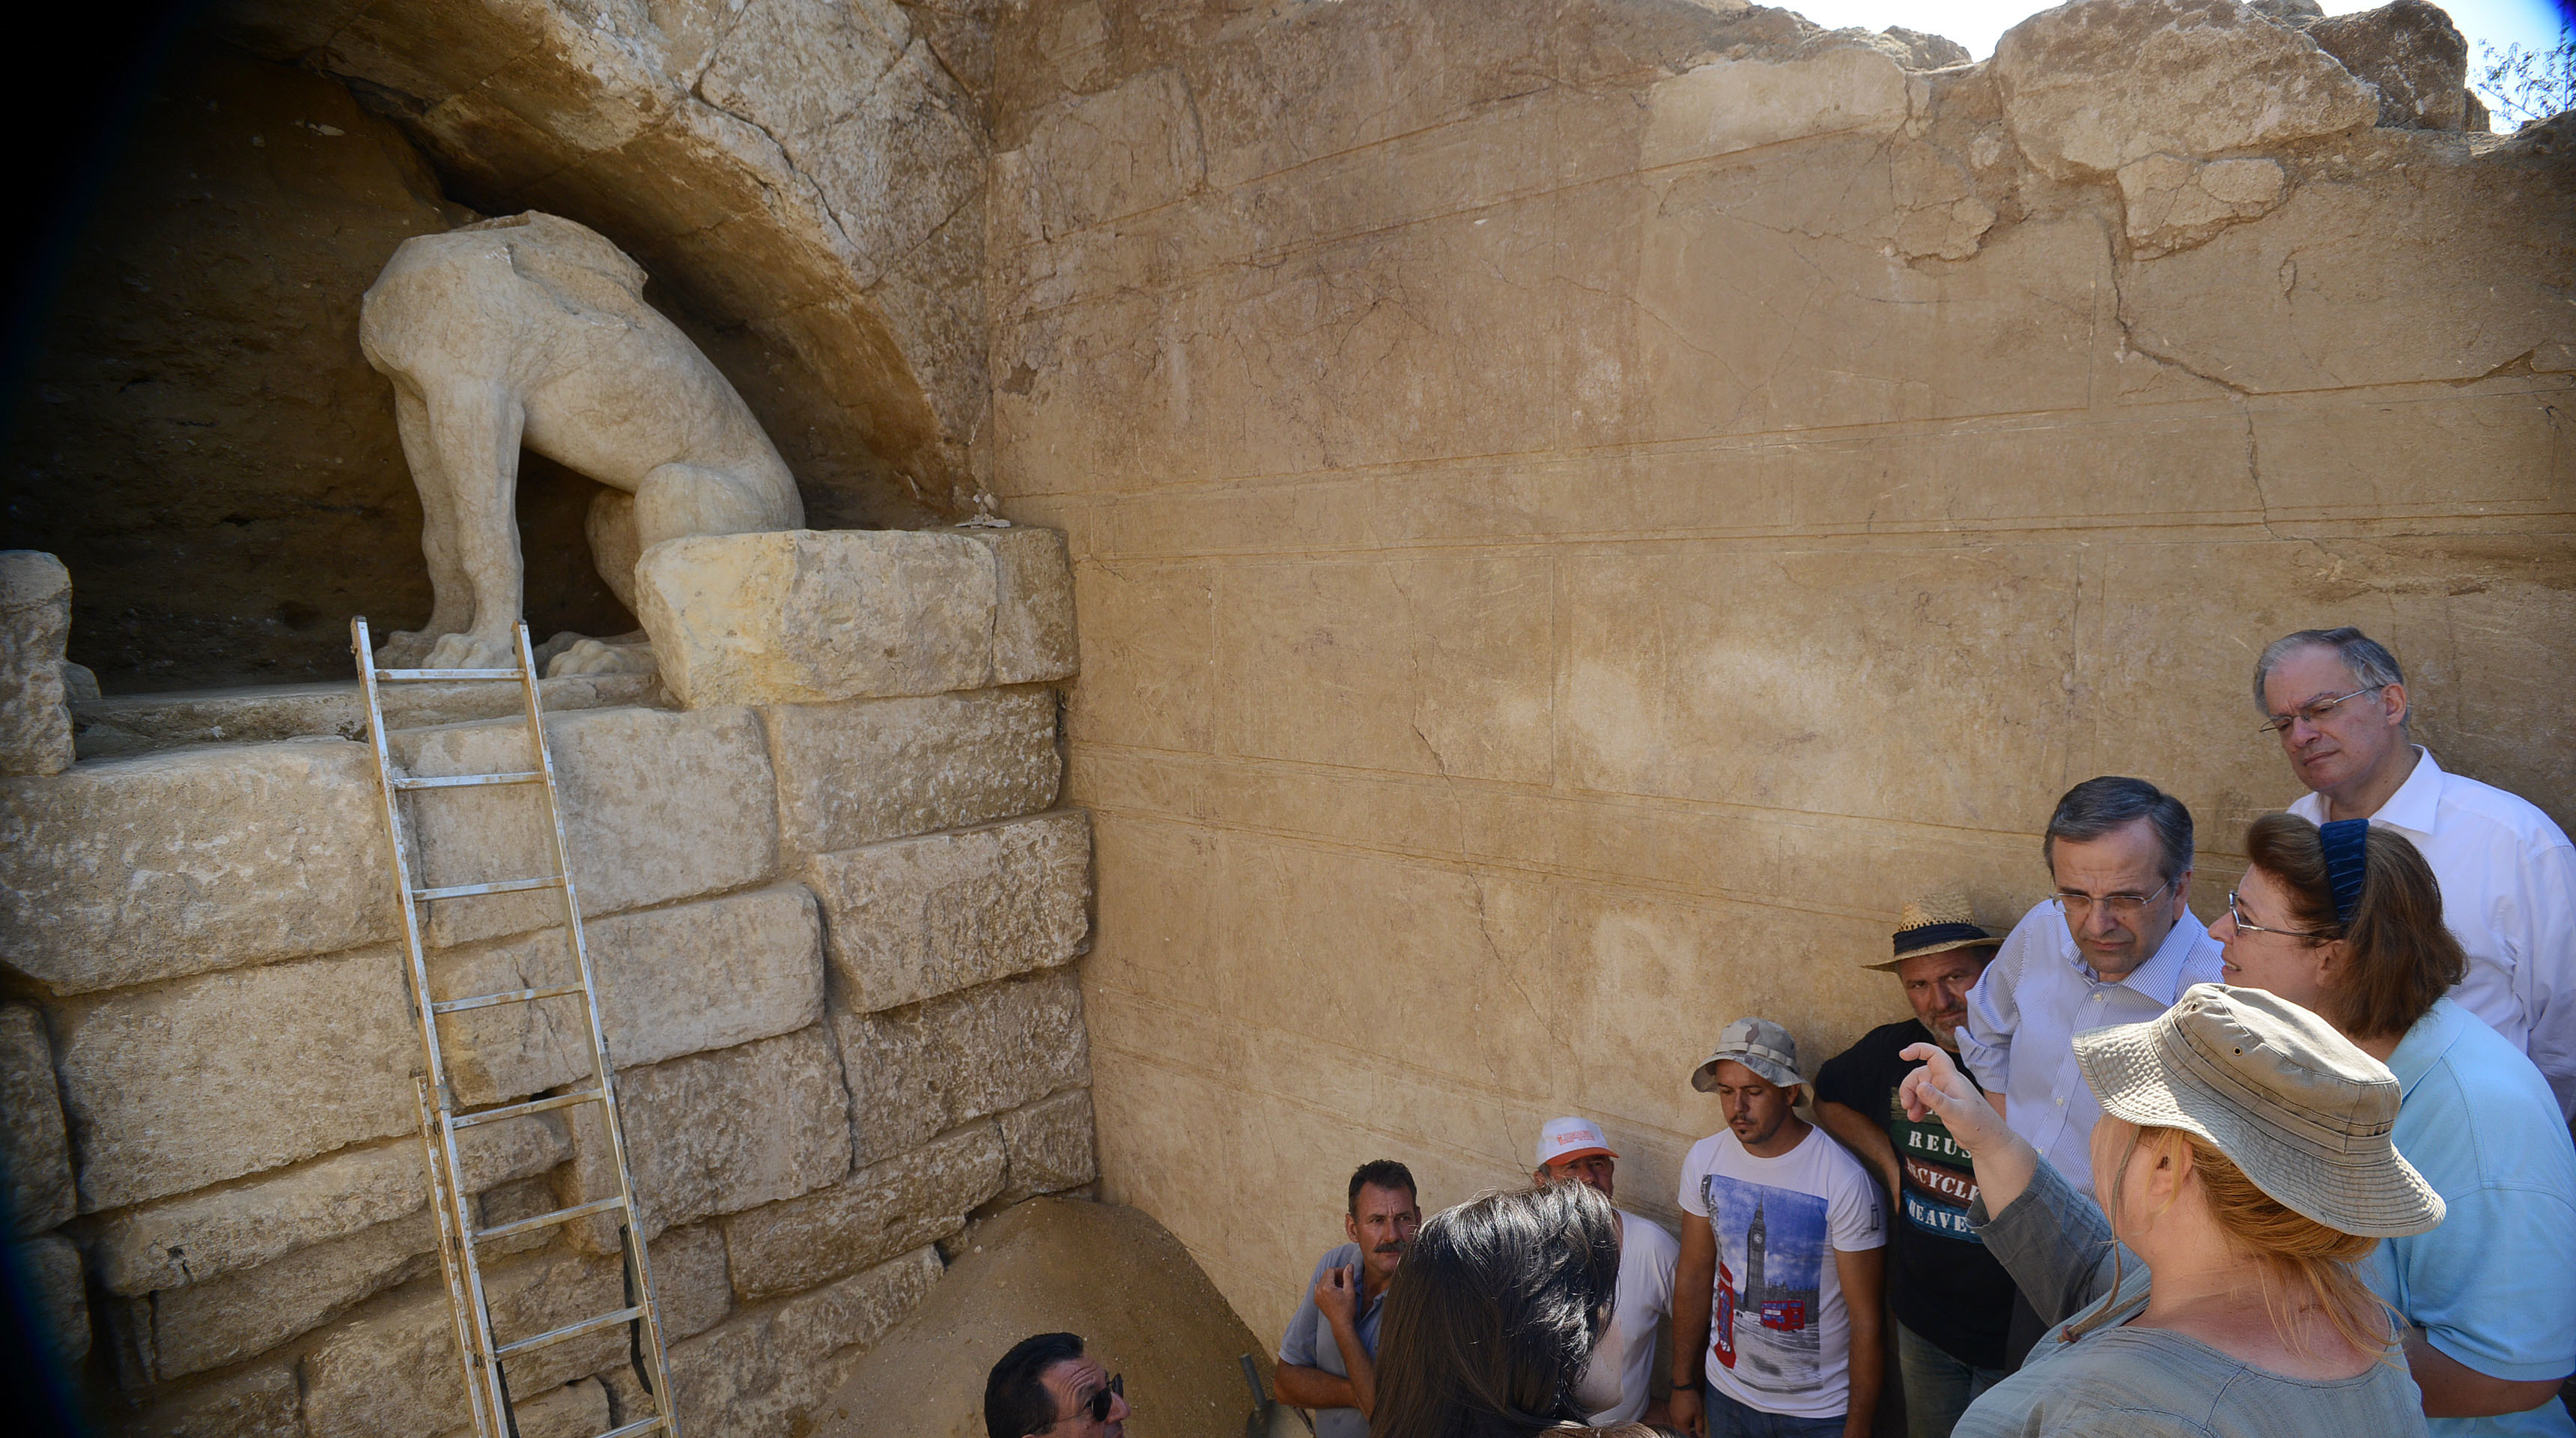 Αρχίζουν ξανά οι ανασκαφές στον αρχαίο τάφο της Αμφίπολης – Πώς θα κινηθούν οι αρχαιολόγοι – Διεθνή δίκτυα στην περιοχή των ανασκαφών